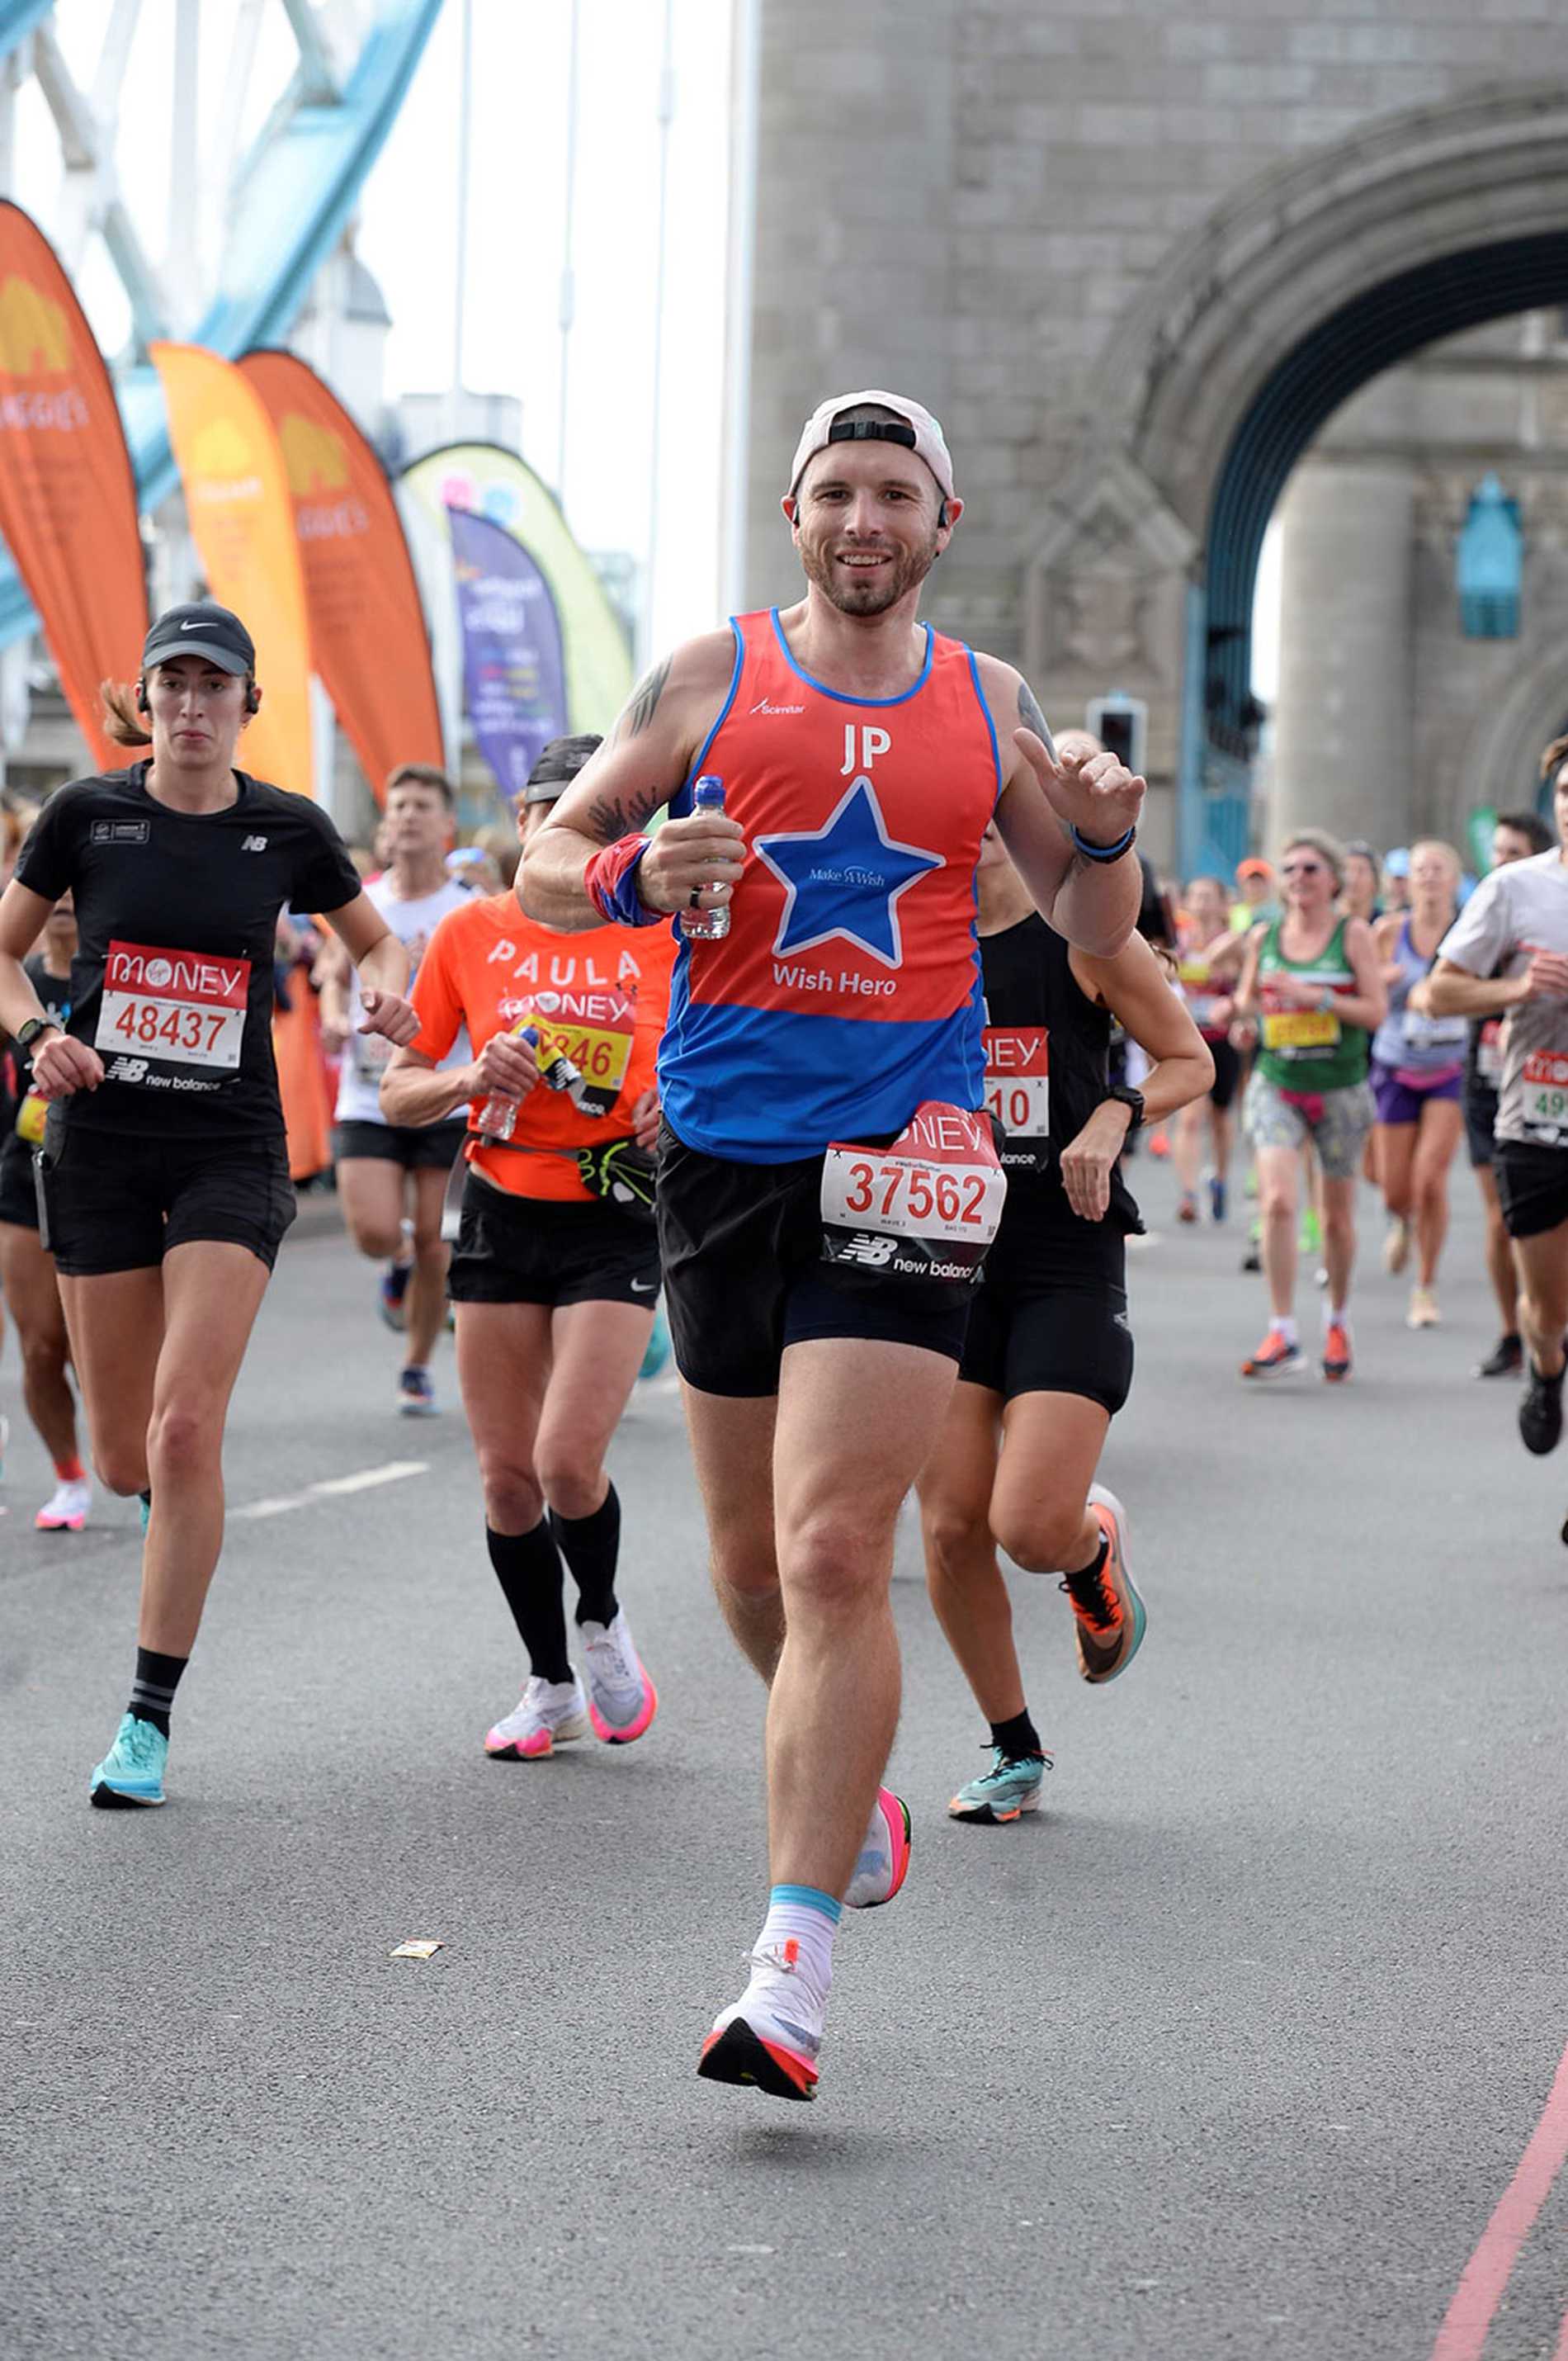 #WishHero, John running across Tower Bridge during the 2021 London Marathon.